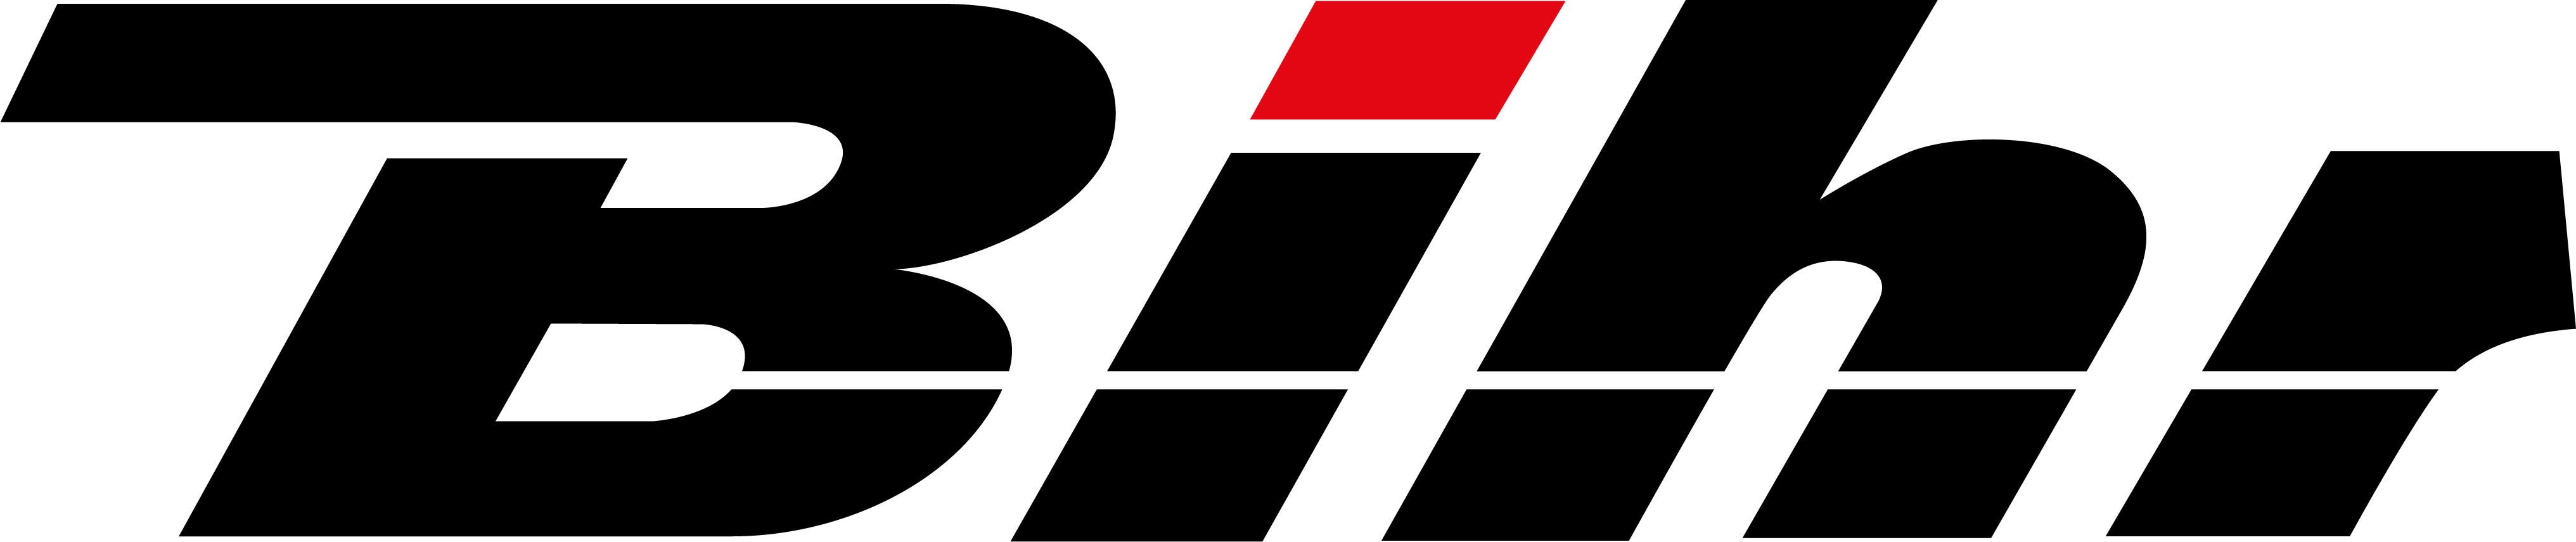 Logo de sponsor